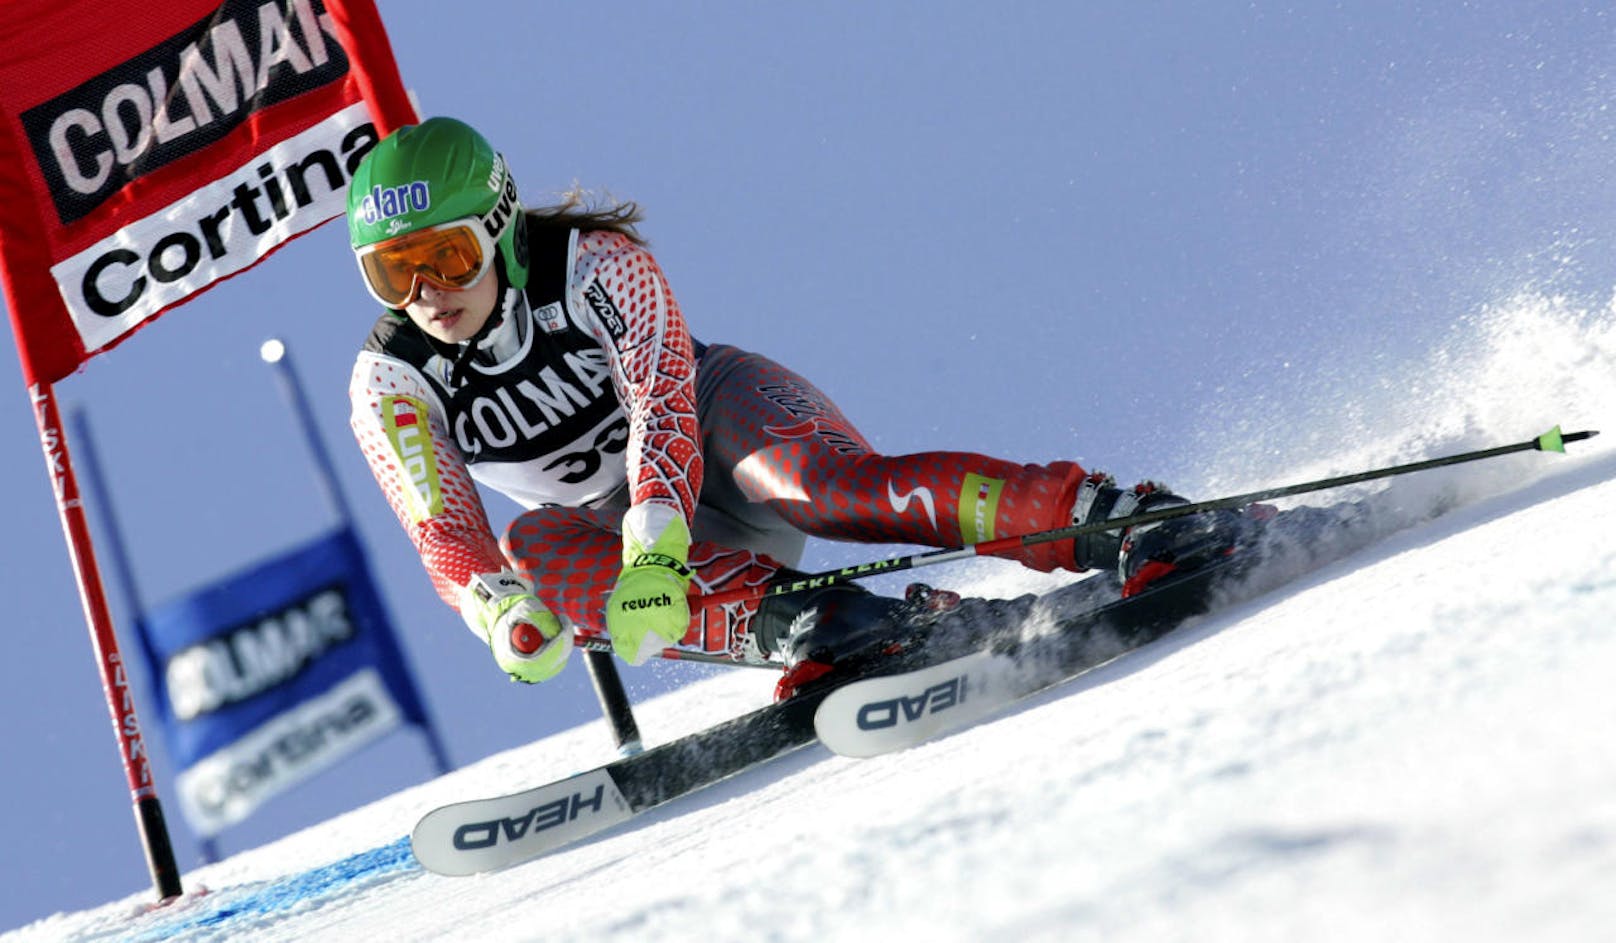 Die ersten Weltcup-Punkte folgten einige Wochen später im siebenten Rennen. Am 21. Jänner 2007 fuhr Anna F. beim Riesentorlauf in Cortina (It) auf Rang 16.